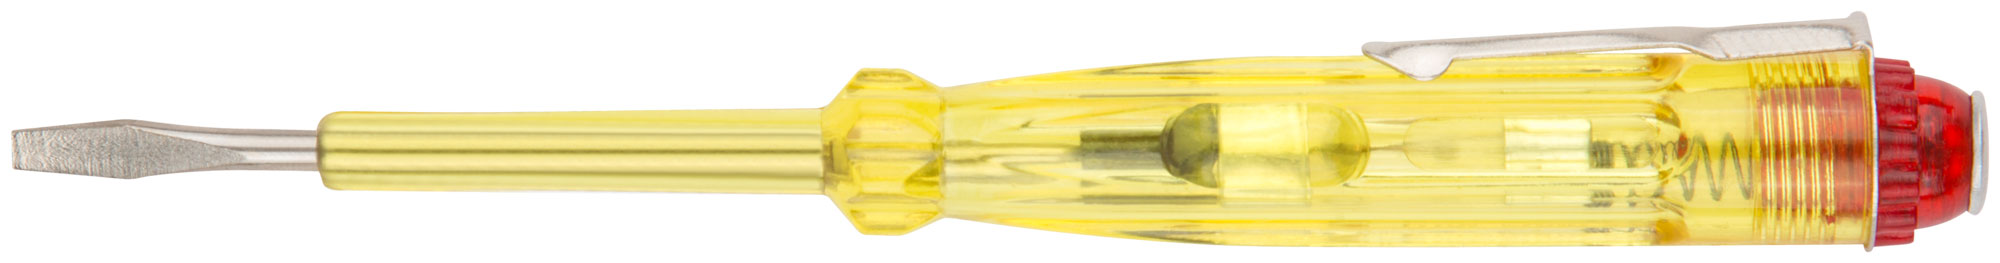 Отвертка индикаторная, желтая ручка 100 - 500 В, 140 мм КУРС 56501 отвертка индикаторная курс 56501 желтая ручка 100 500 в 140 мм